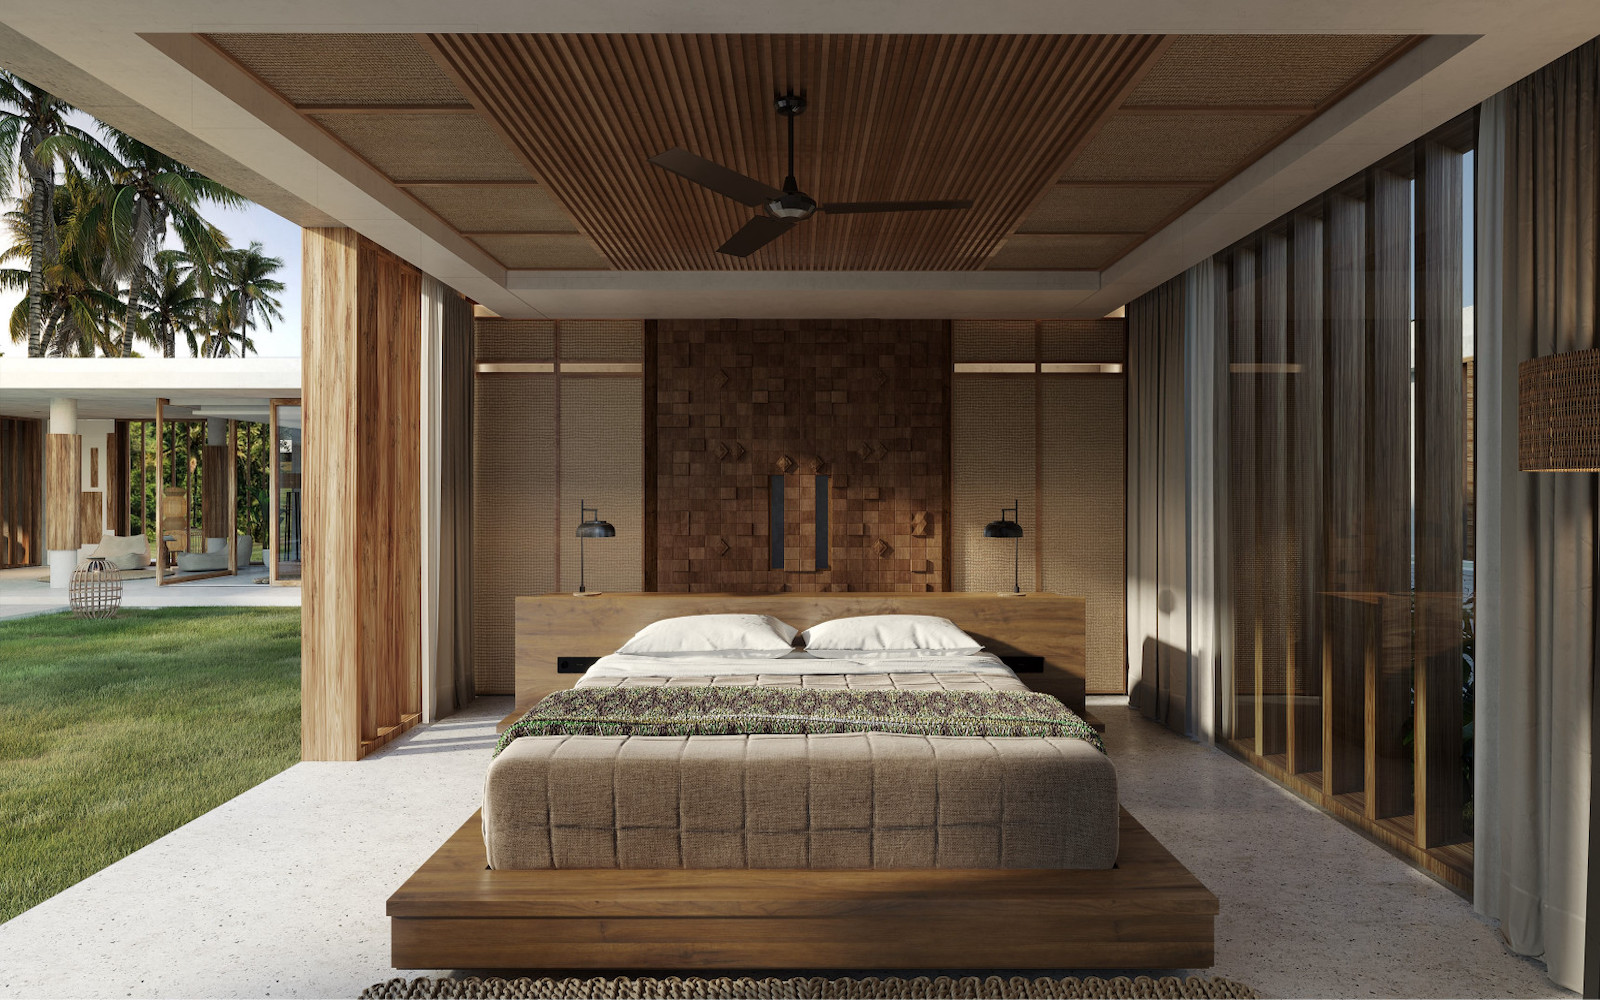 Render of indoor/outdoor bedroom in Indonesia hotel